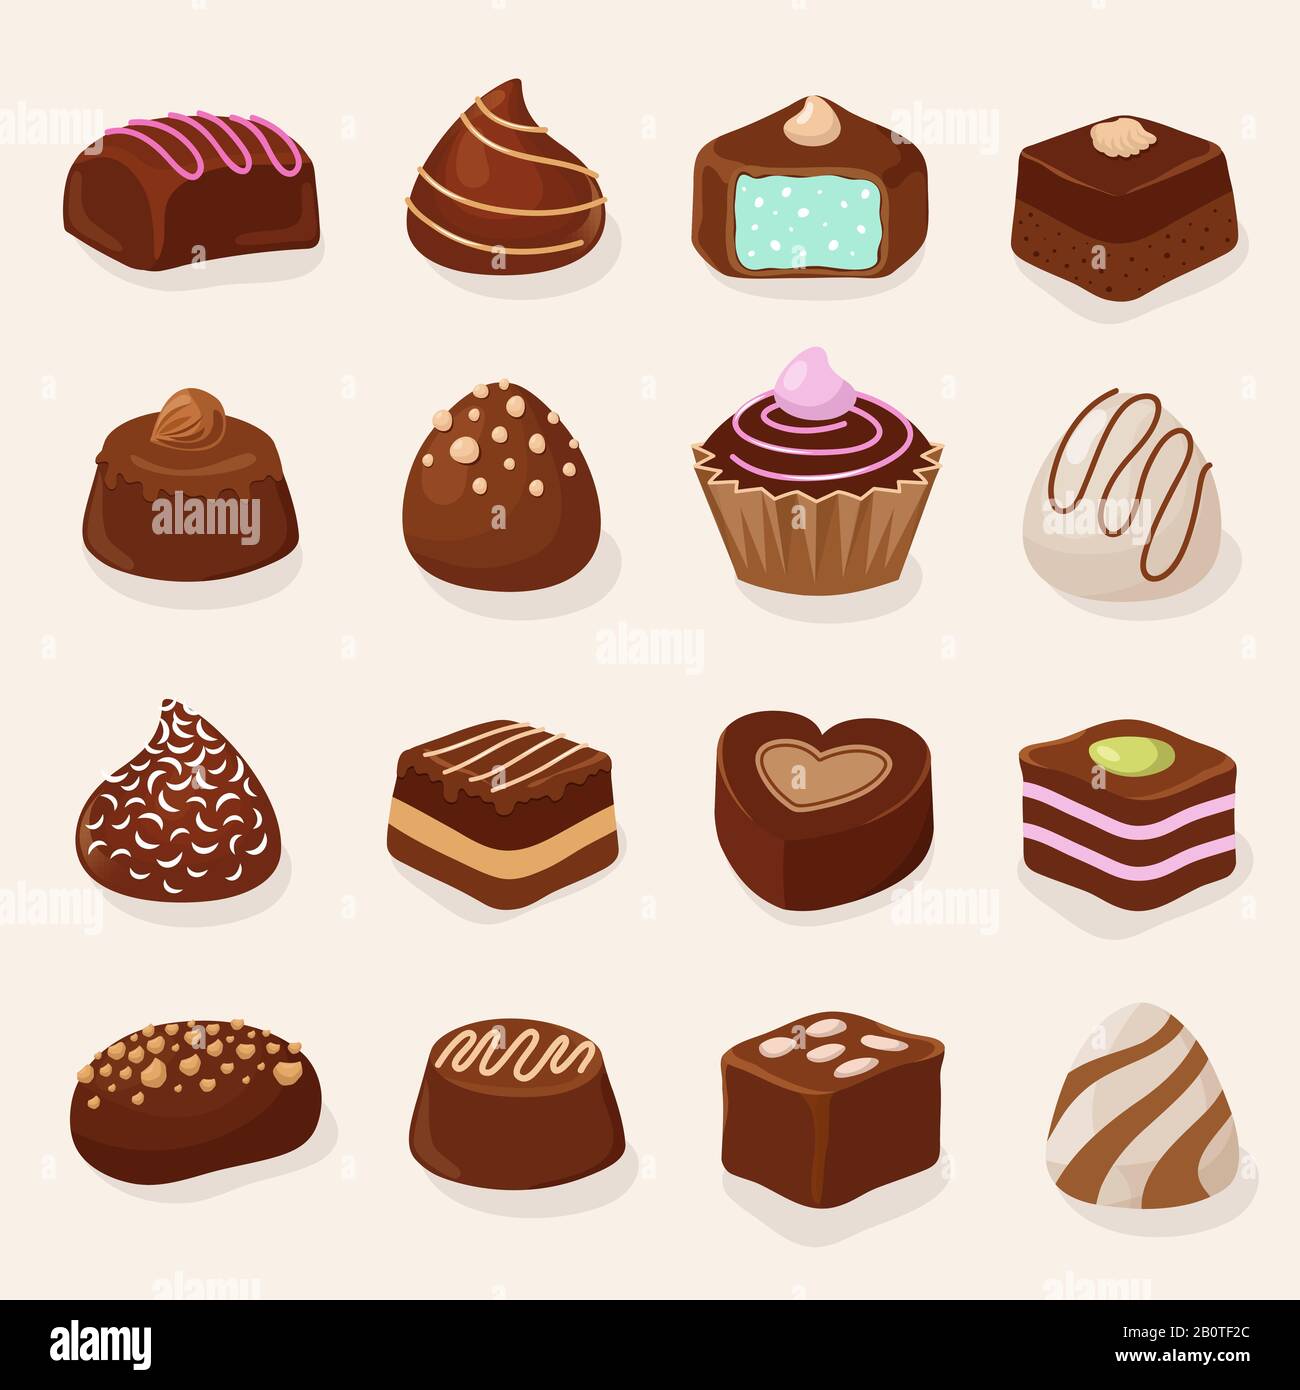 Cartoon-Schokolade Desserts und Süßigkeiten Vektor-Set. Dessert mit Schokoladenbonbons, Illustration von süßem Schokoladenkuchen Stock Vektor